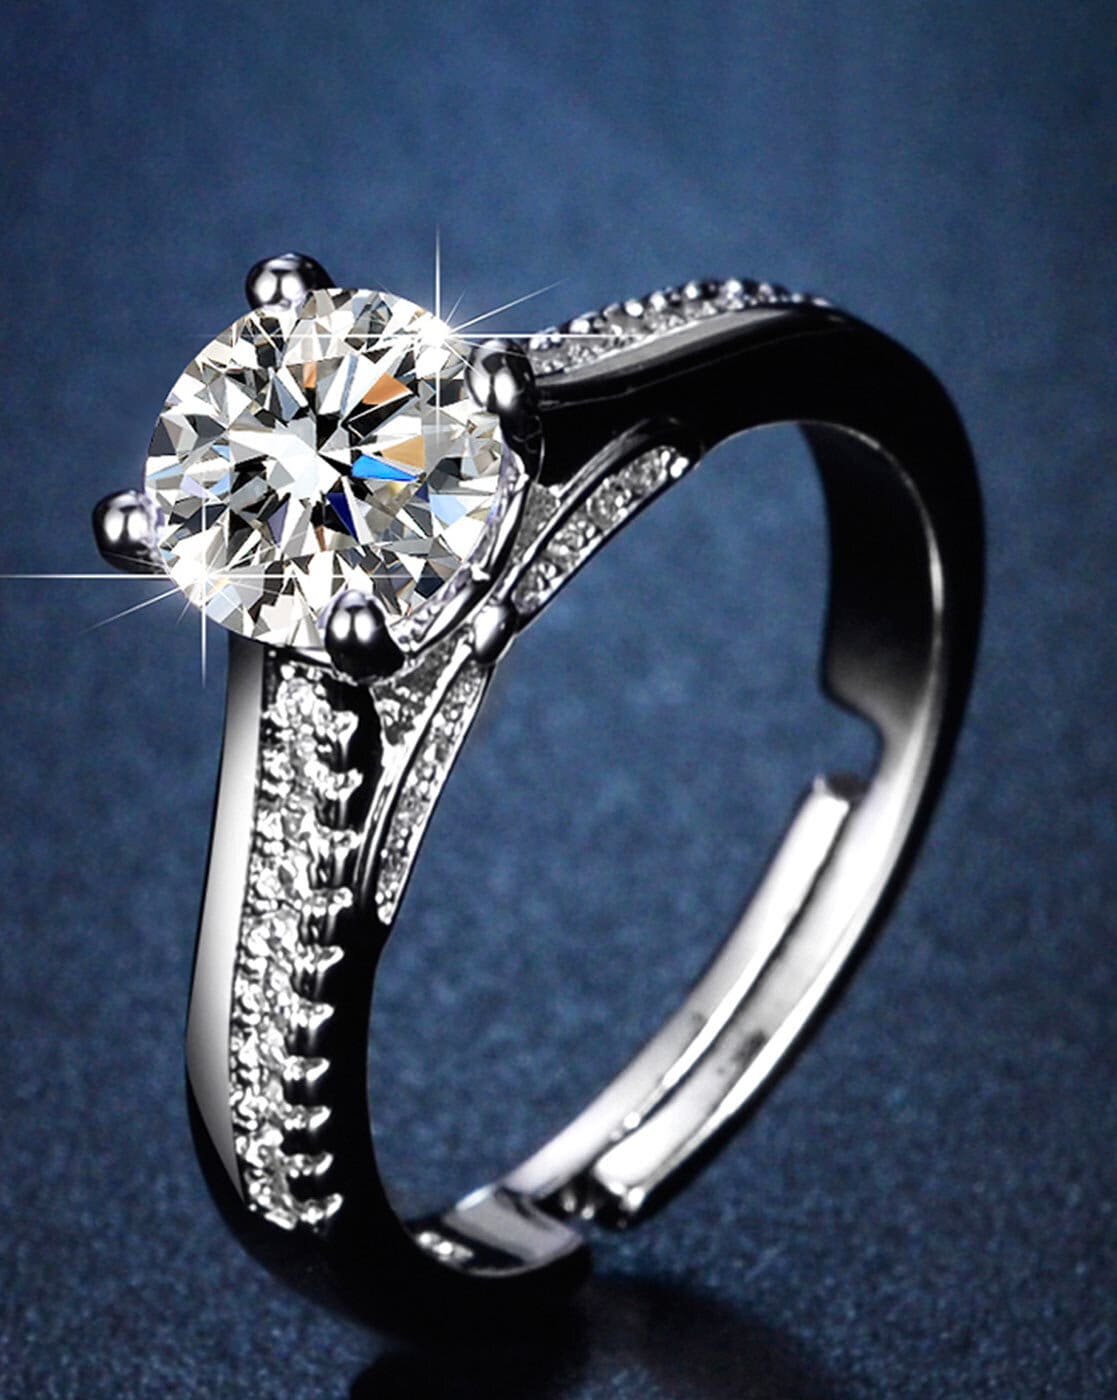 Skye Black Diamond Ring Set Sterling Silver Kite Cut Black Onyx Engagement  Ring for Women Promise Ring Anniversary Birthday Gift for Her - Etsy